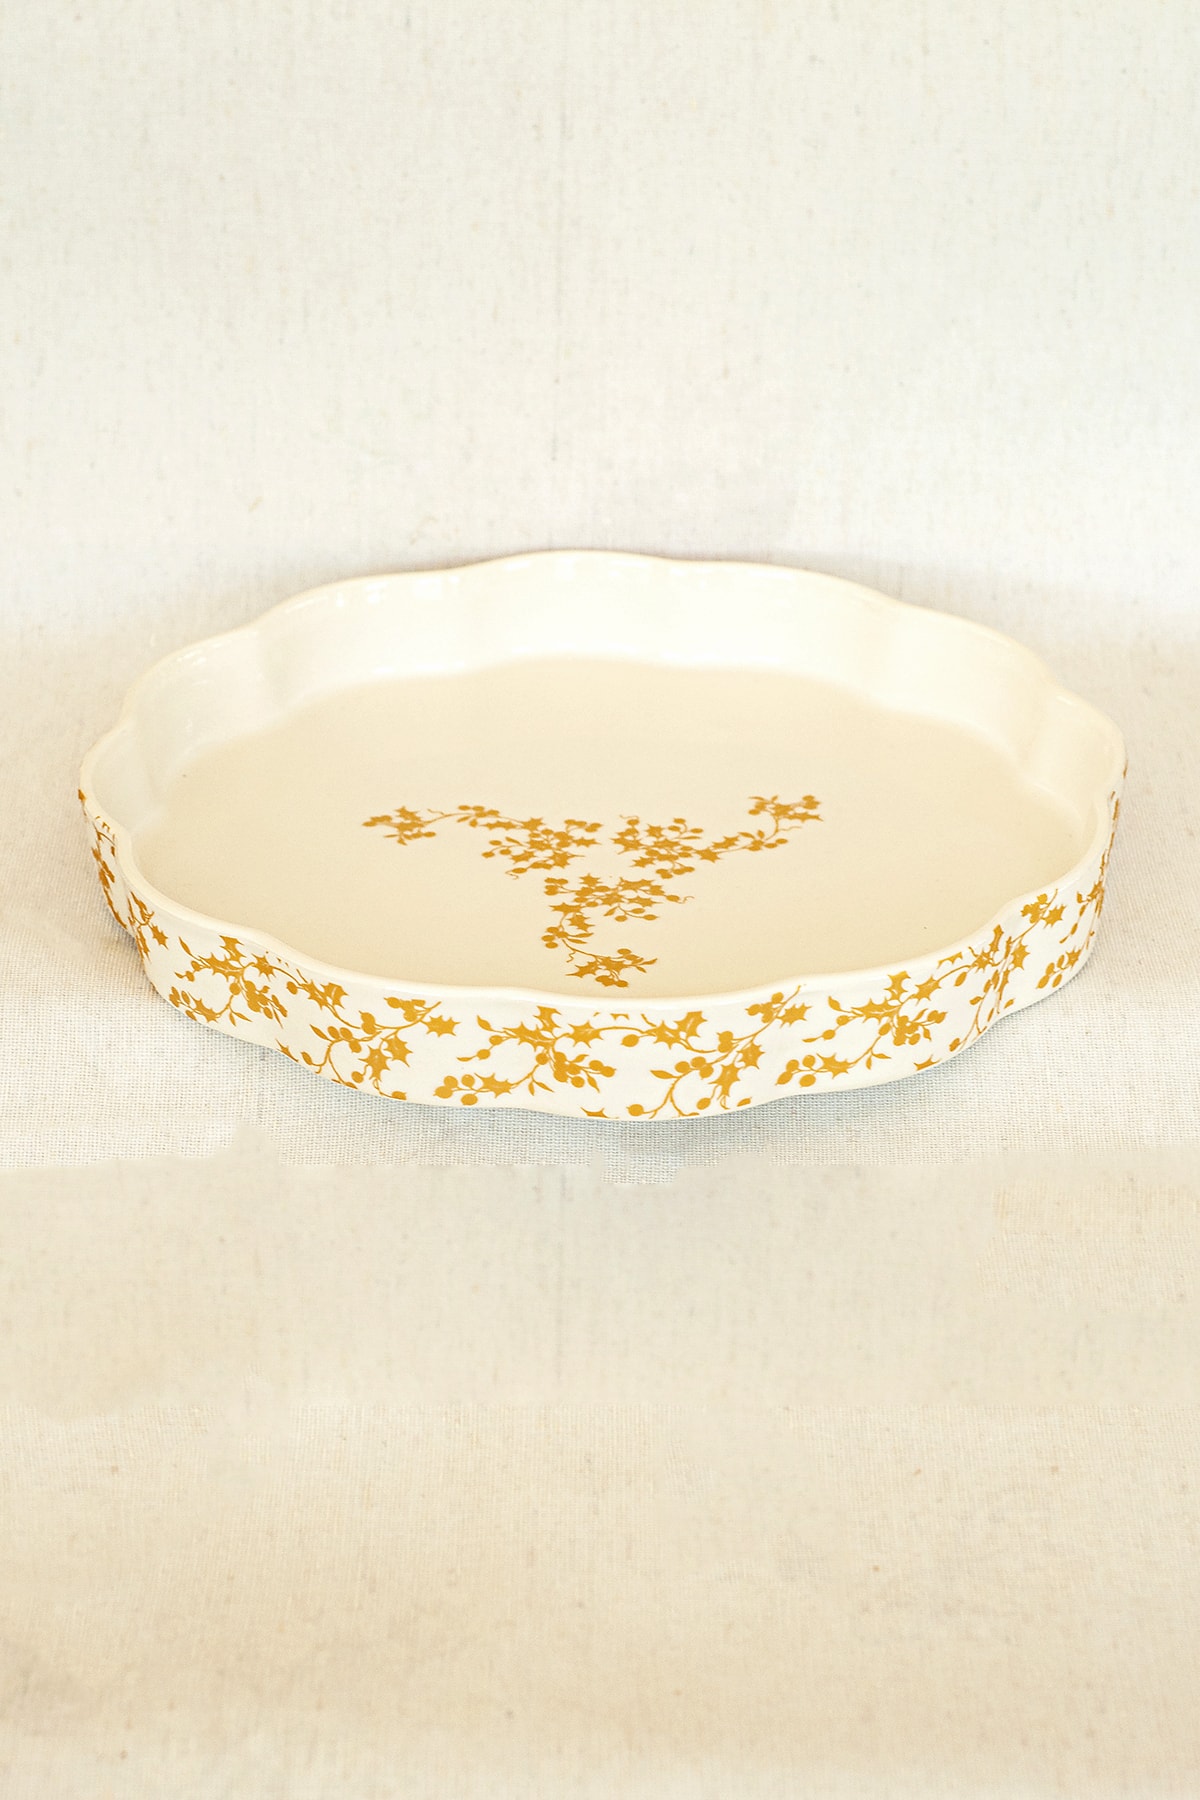 Bursa Porselen Dekor Altın Yıldız Desen Tepsi/fırın Kabı